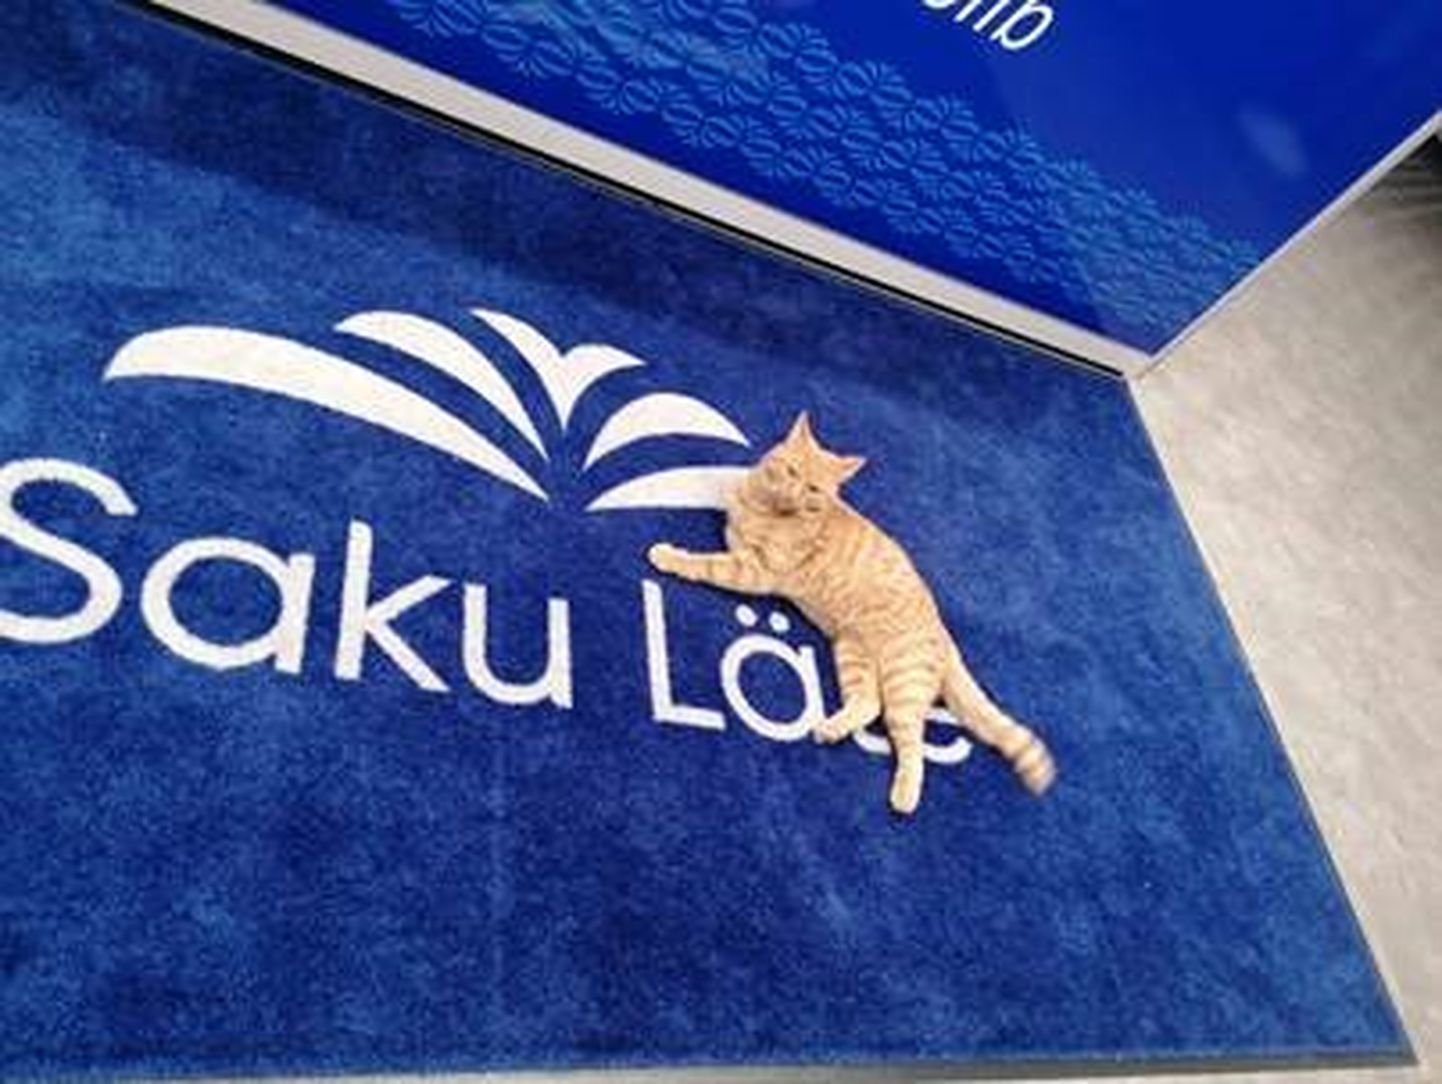 Приехав в Тарту, кошка гордо спрыгнула с машины и улеглась на ковер в офисе Saku Läte.